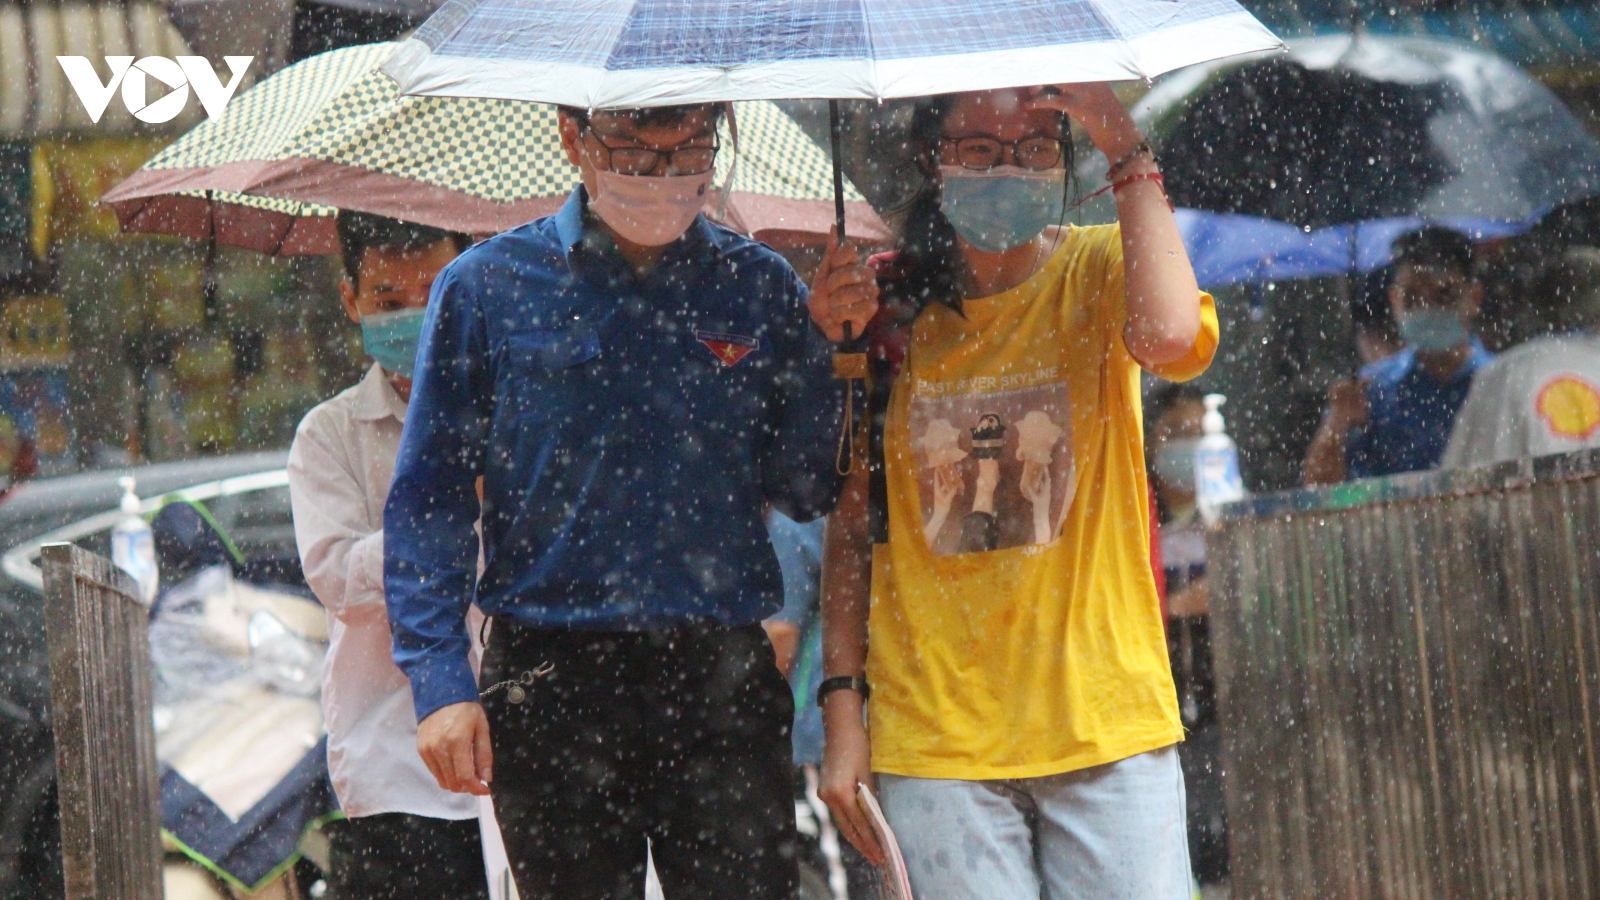 Dầm mình trong mưa hỗ trợ thí sinh thi vào lớp 10 tại Hà Nội